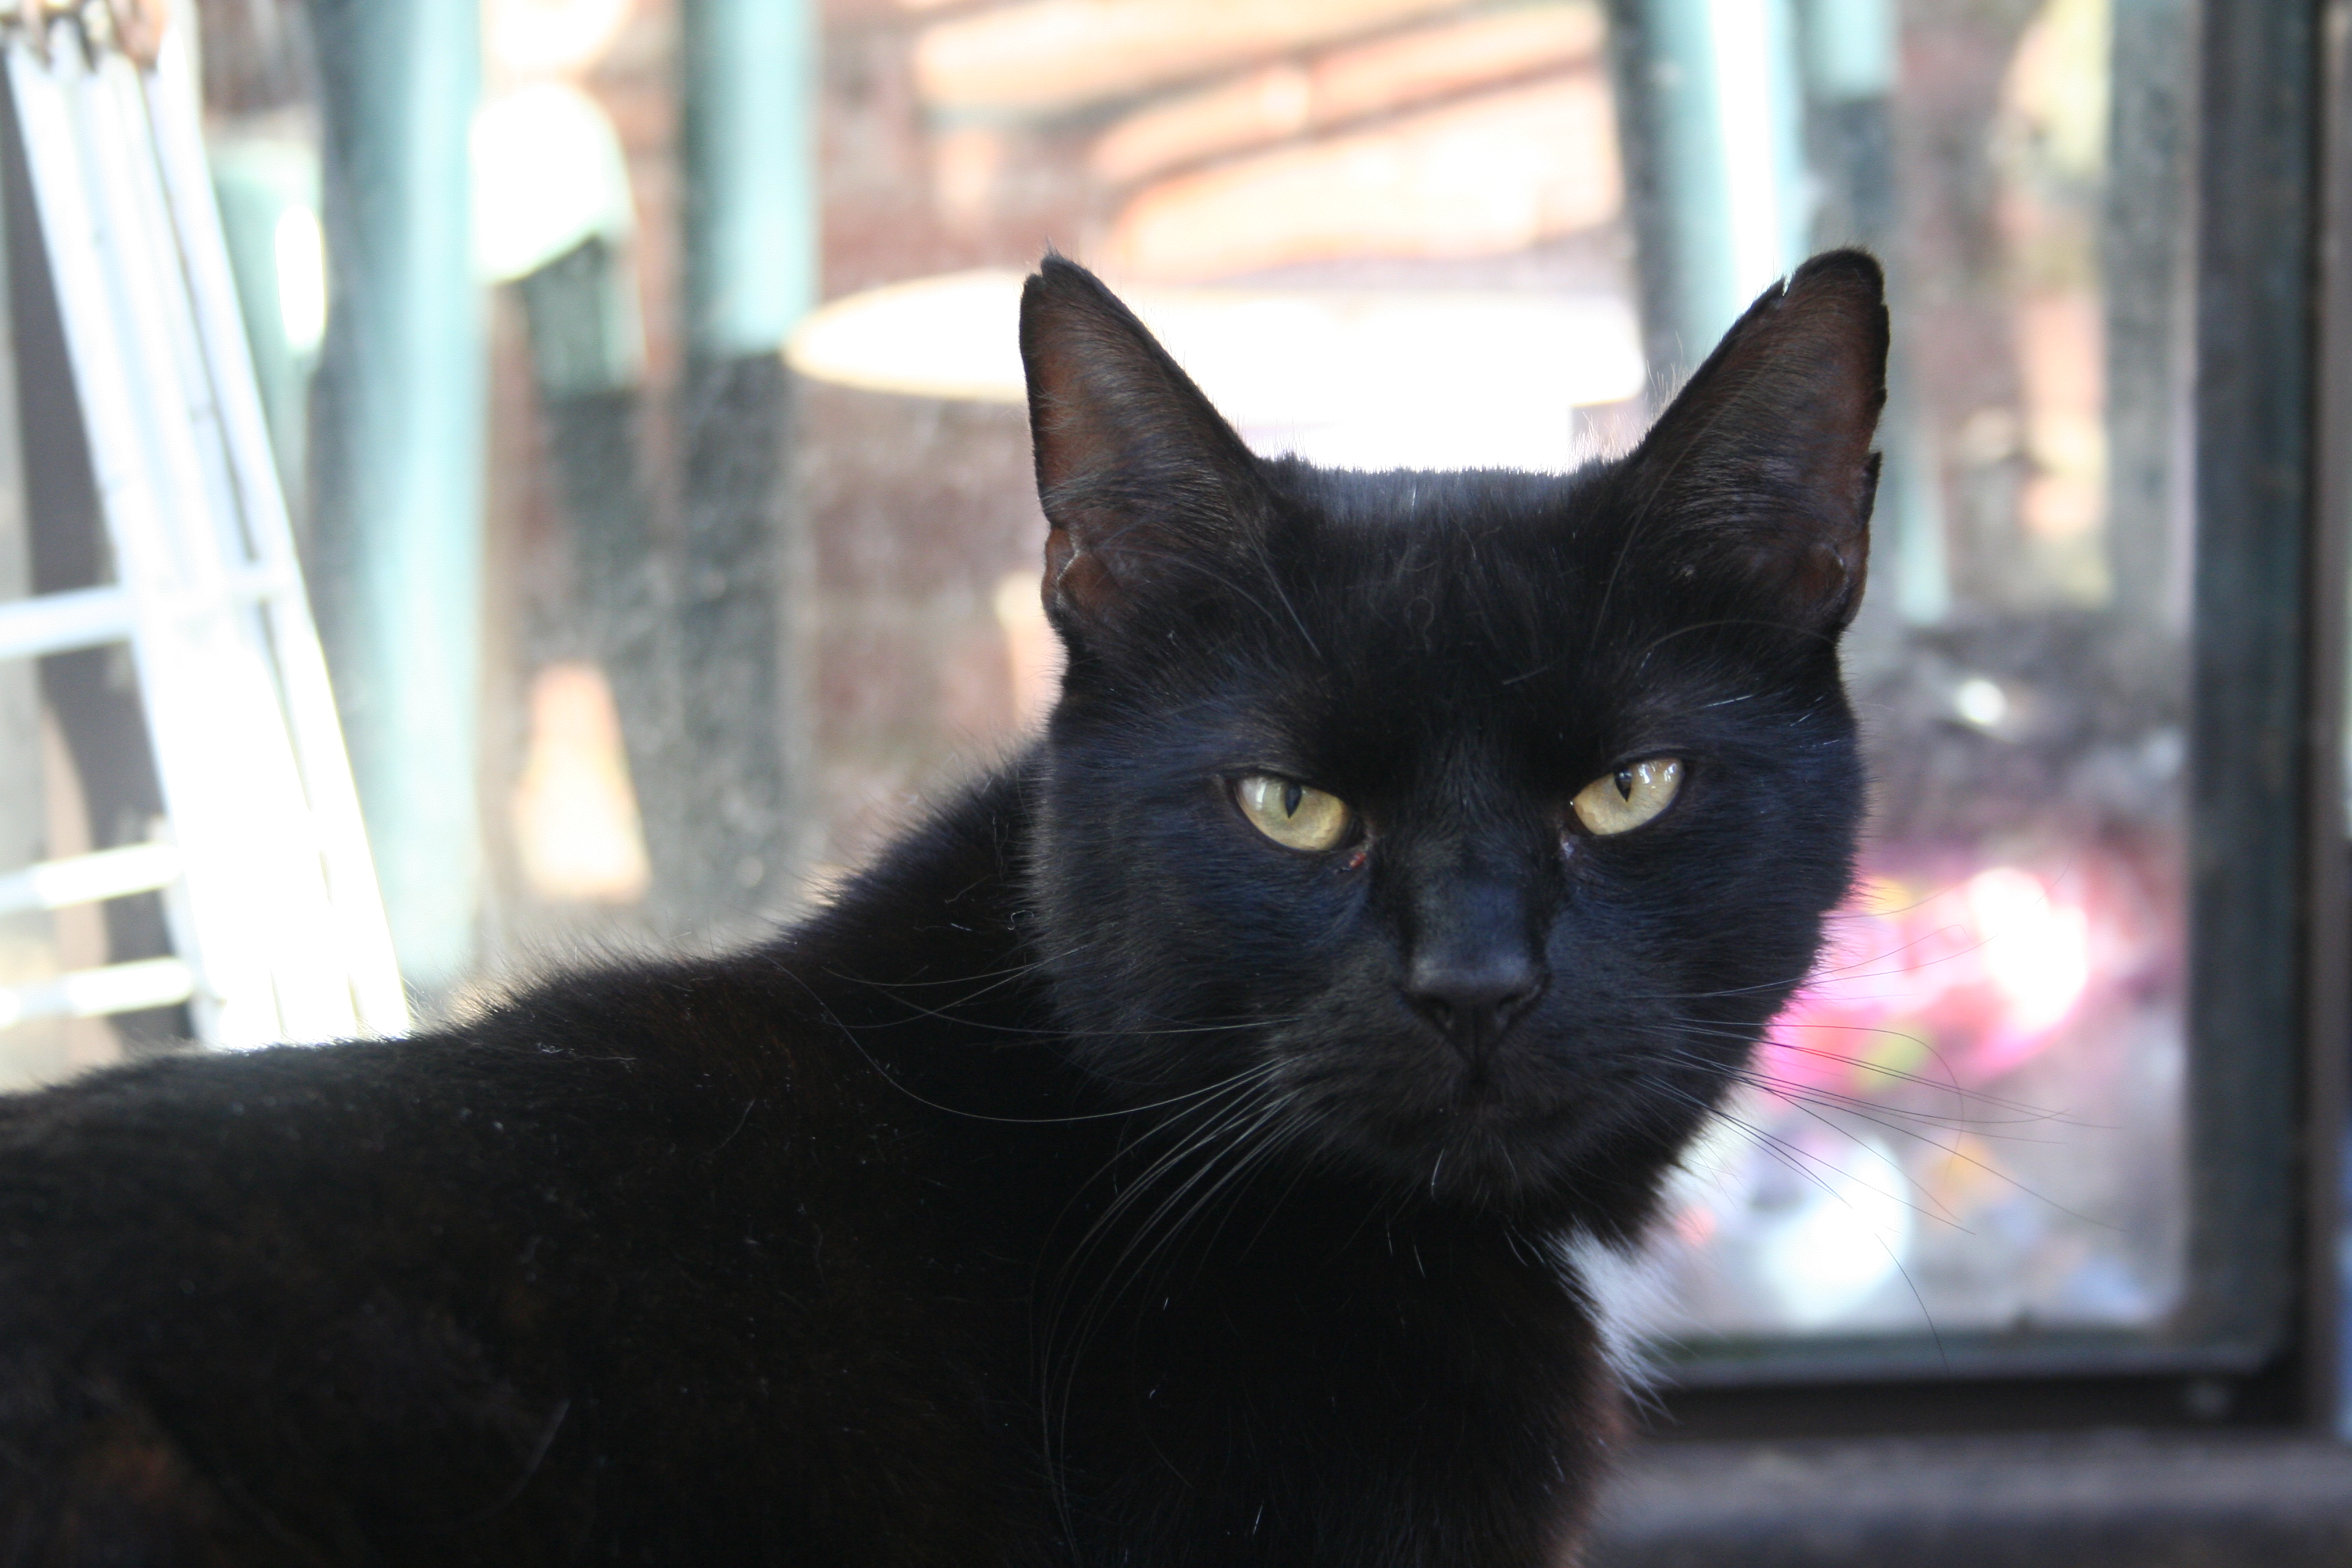 Gigi - black cat